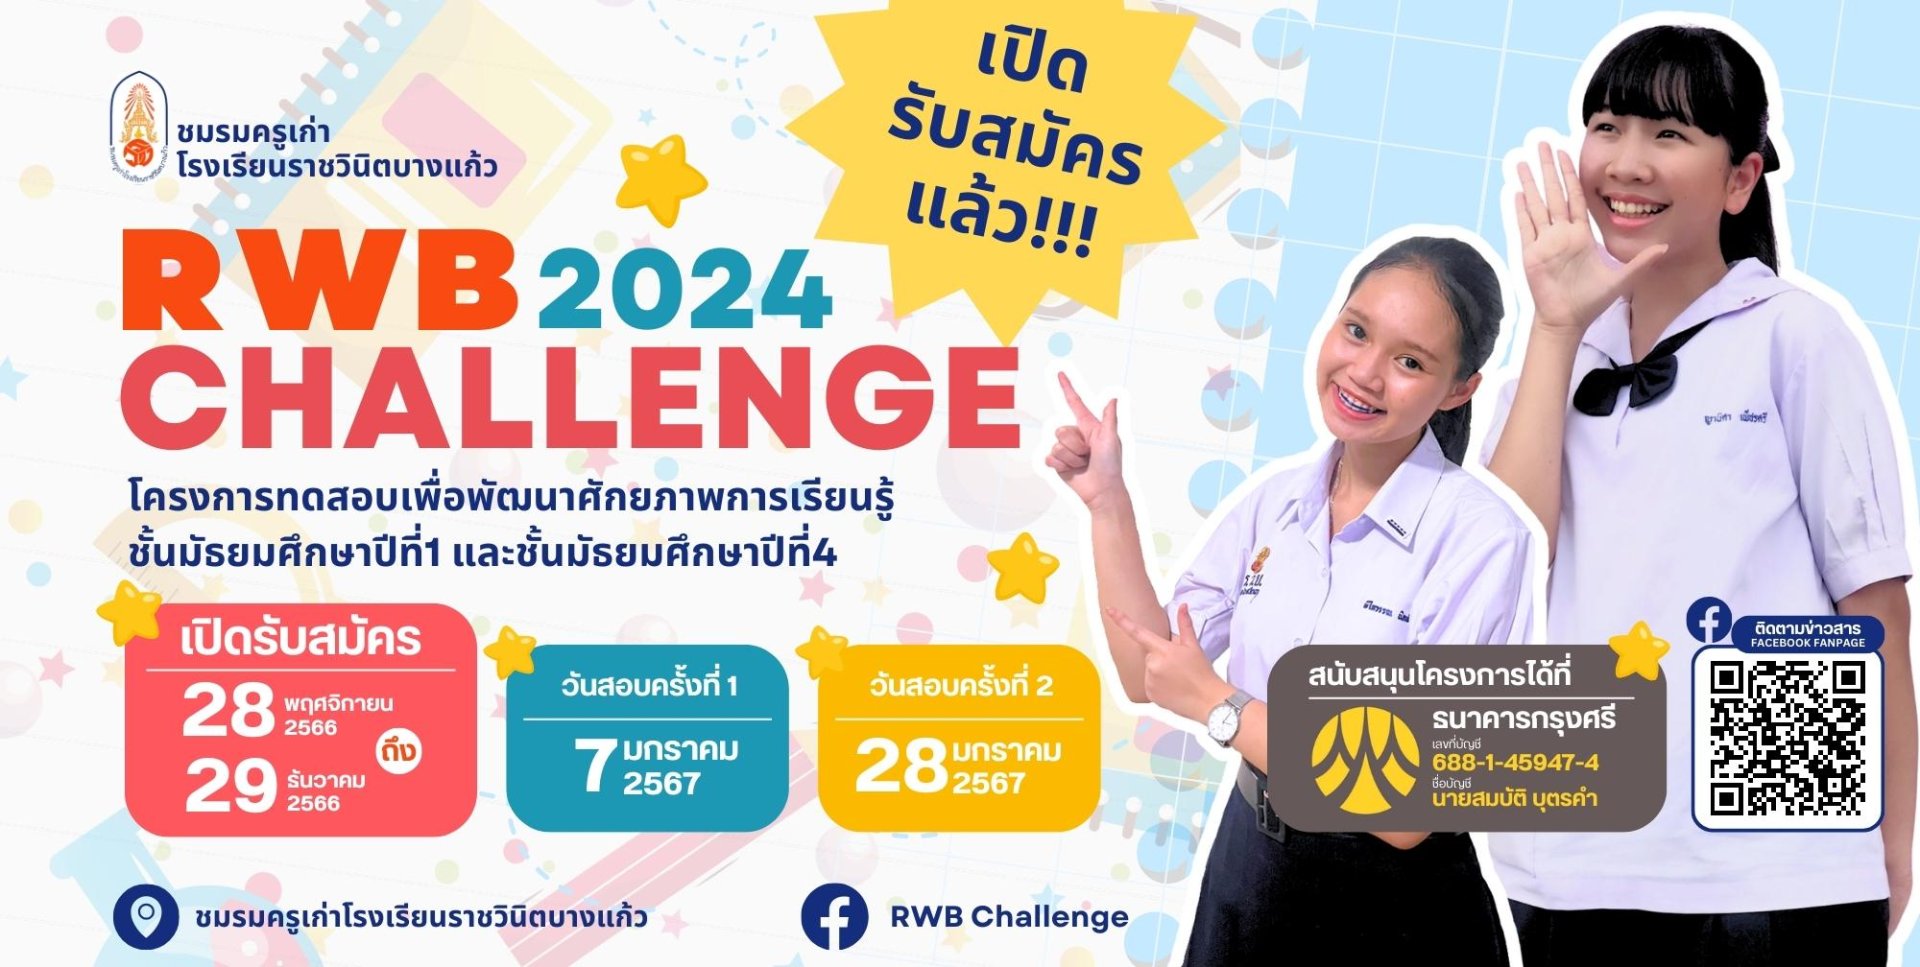 RWB Challenge 2024 - โครงการทดสอบเพื่อพัฒนาศักยภาพการเรียนรู้ชั้นมัธยมศึกษาปีที่ 1 และ 4 โรงเรียนราชวินิตบางแก้ว